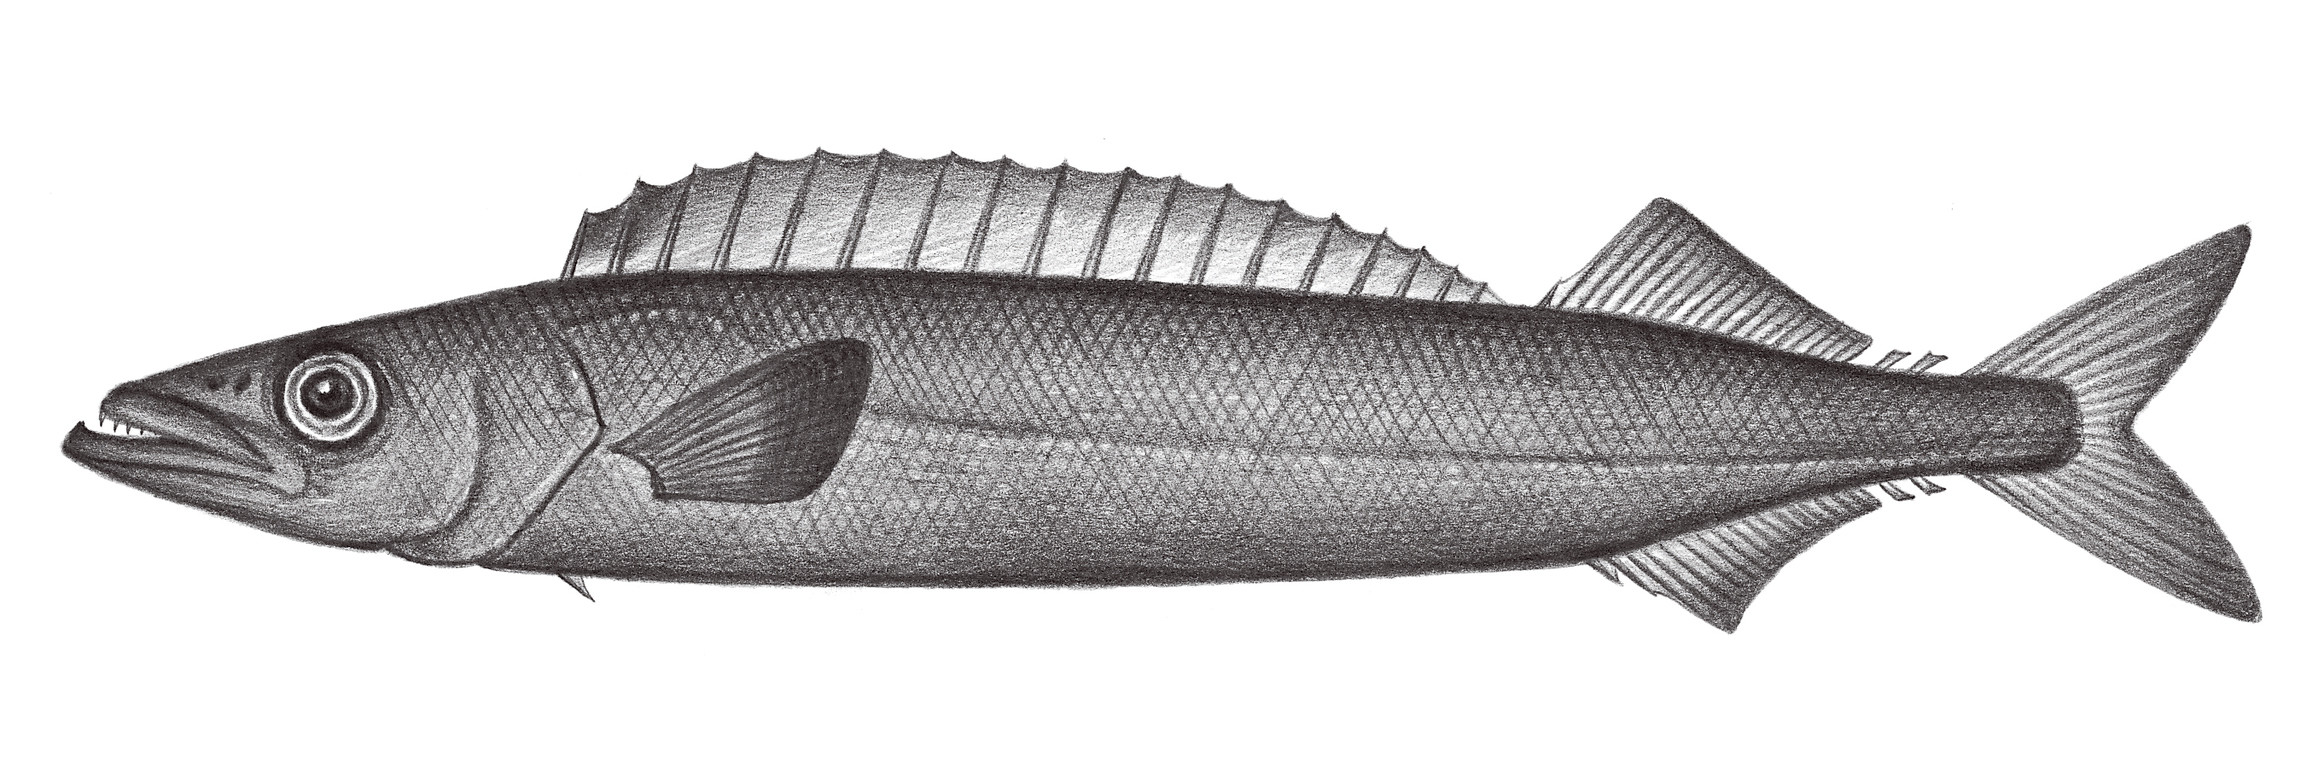 2331.	紡錘蛇鯖 Promethichthys prometheus (Cuvier, 1832)